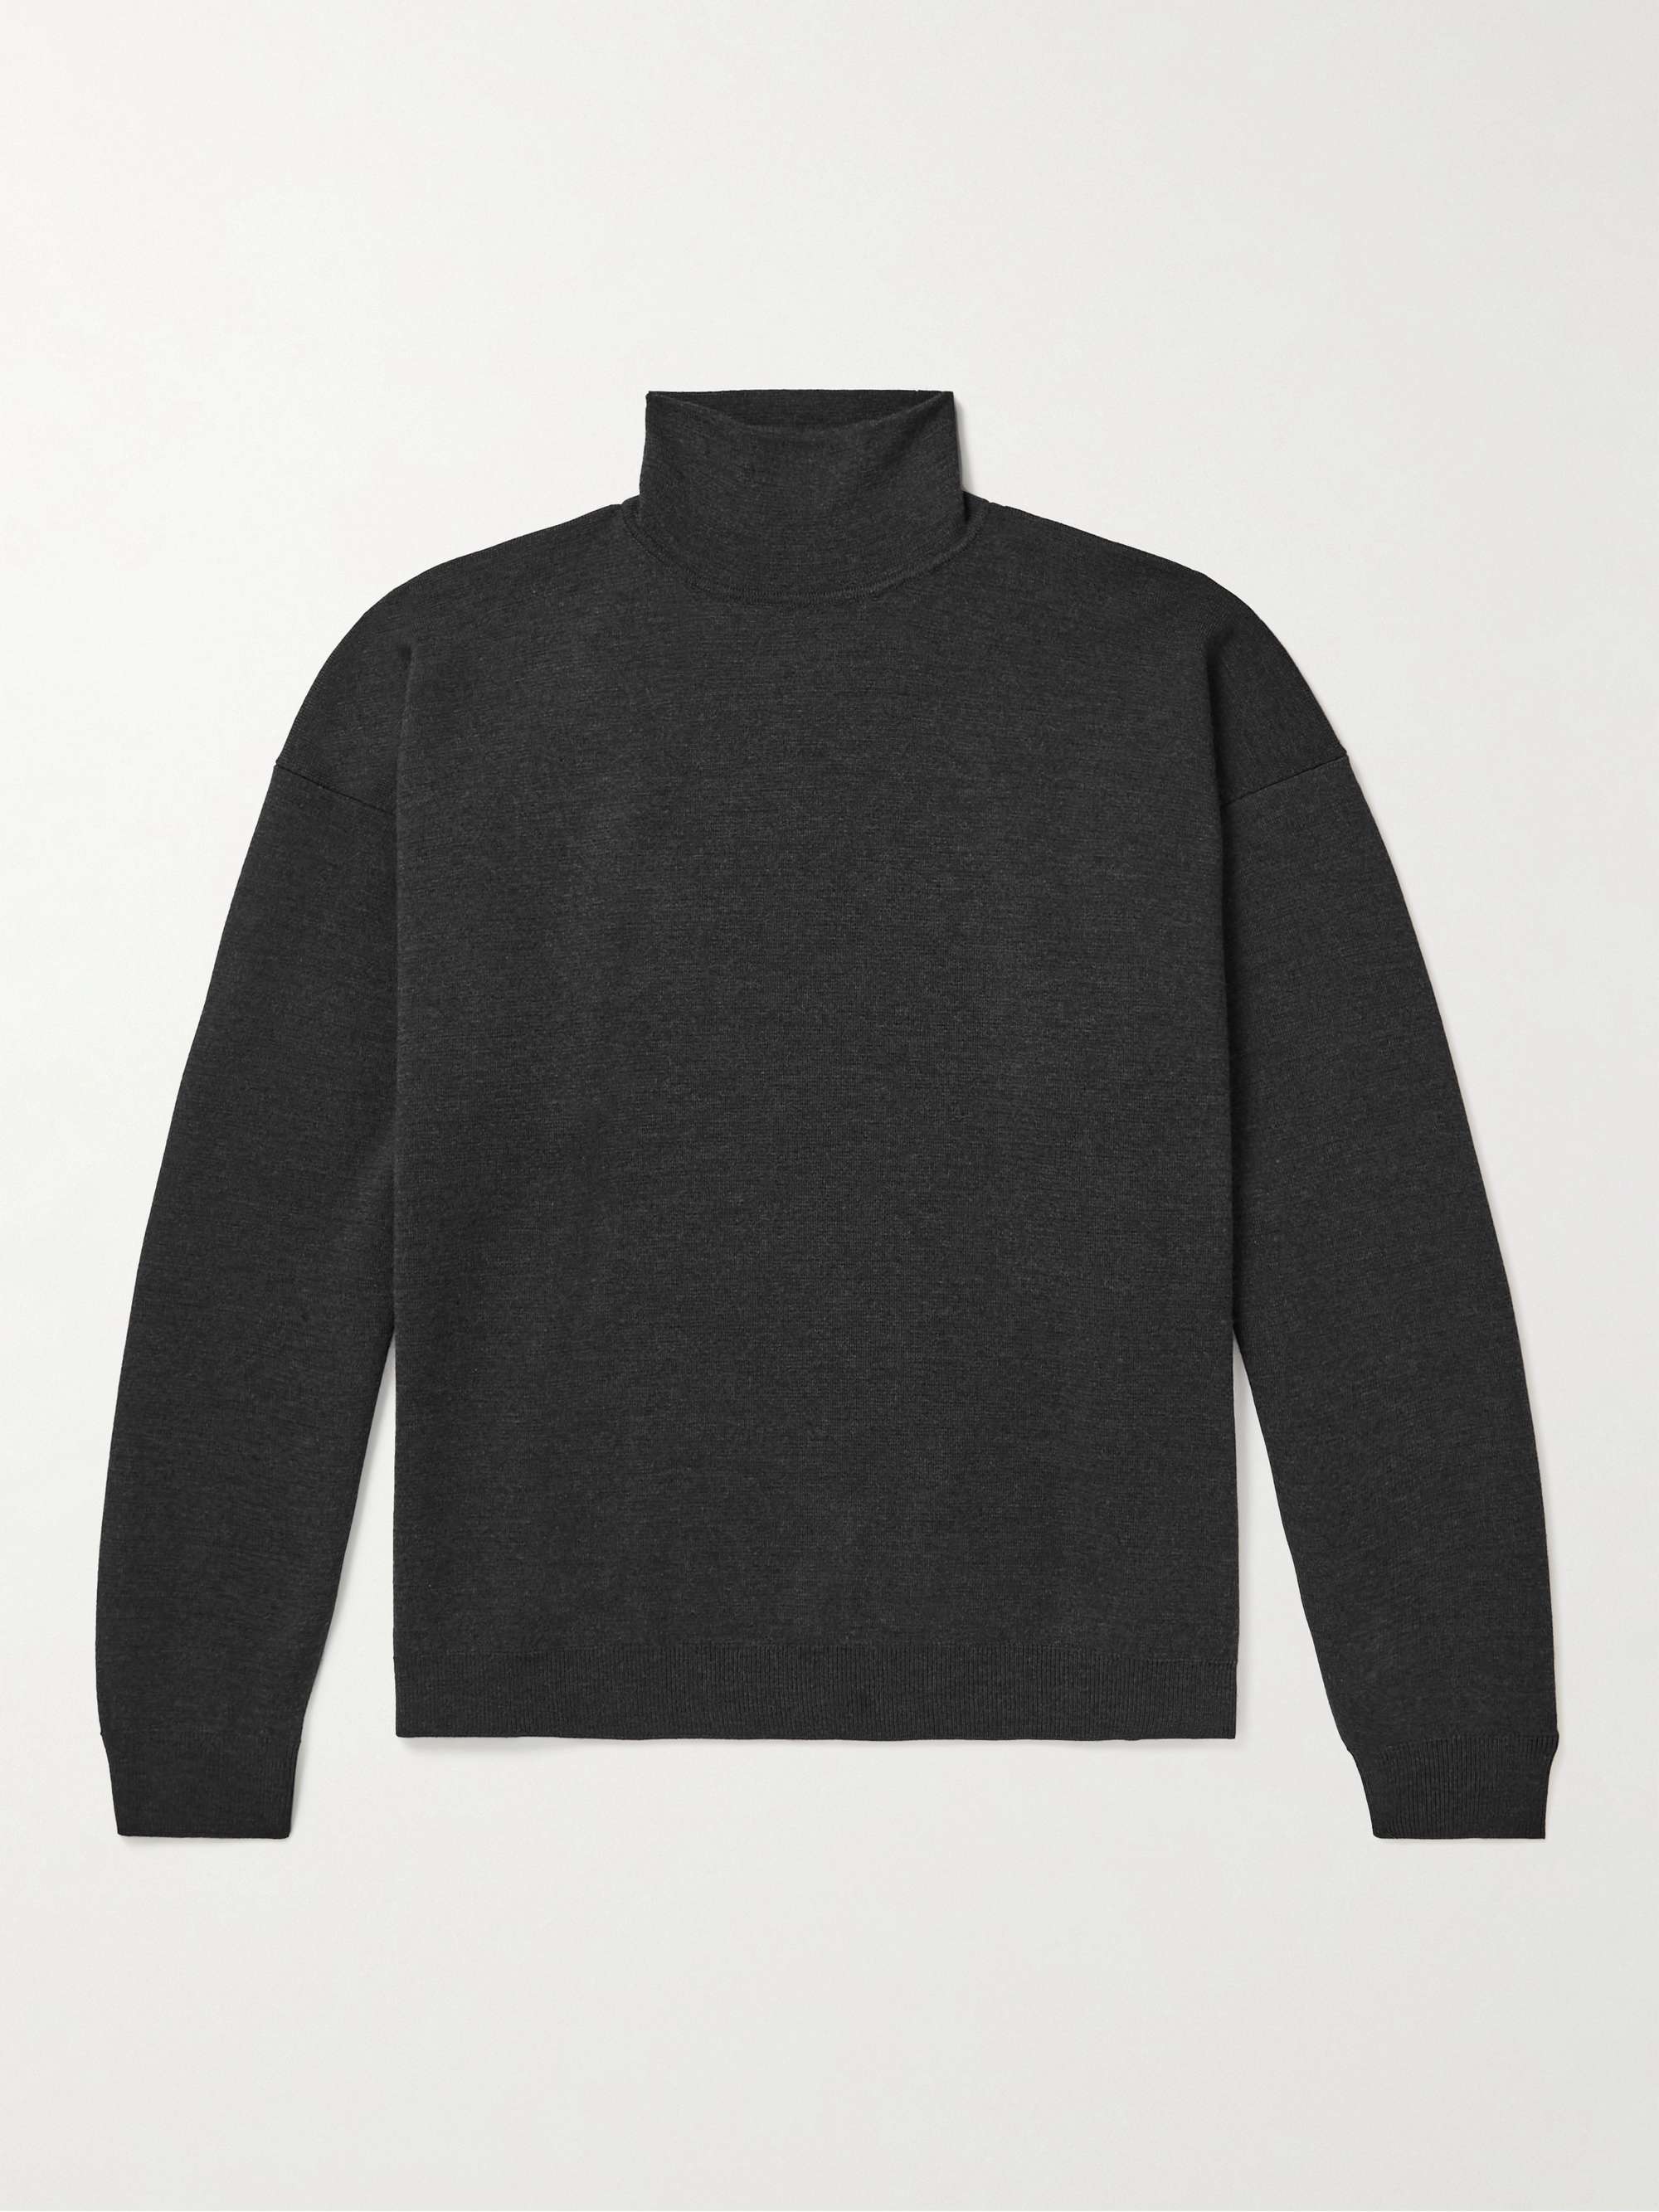 FEAR OF GOD Eternal Logo-Appliqued Merino Wool Rollneck Sweater,Black